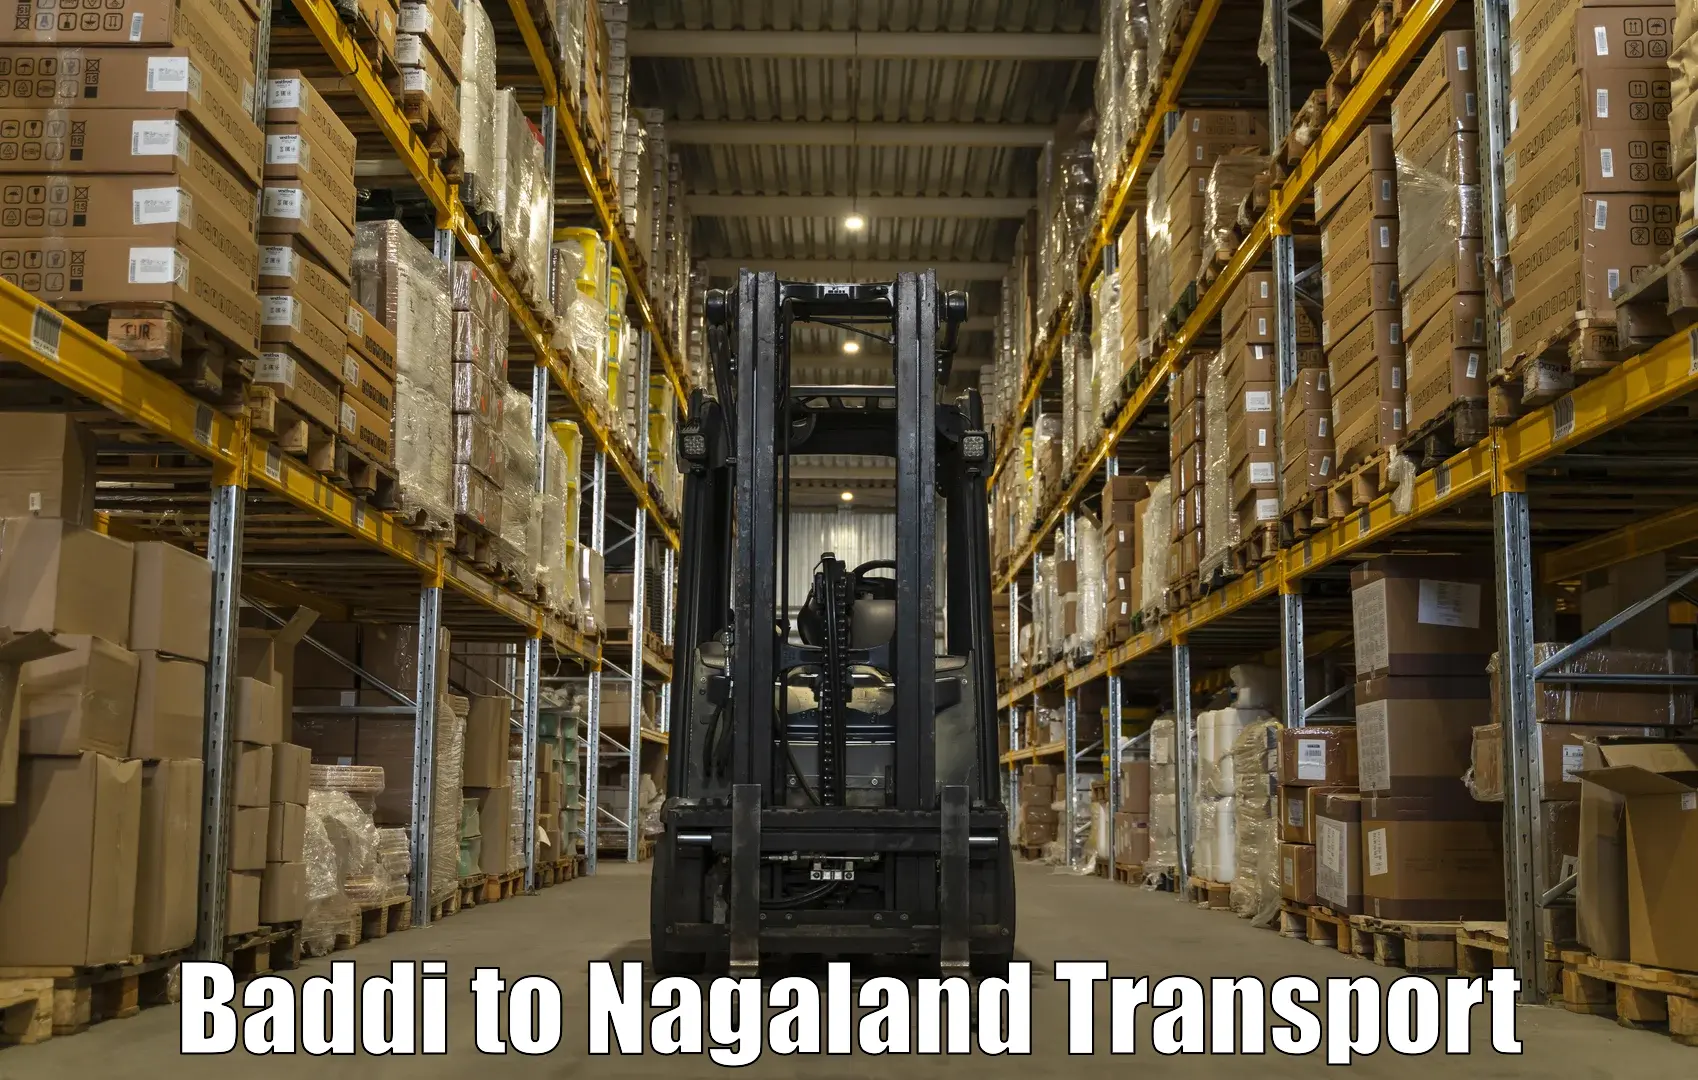 Transport in sharing Baddi to NIT Nagaland